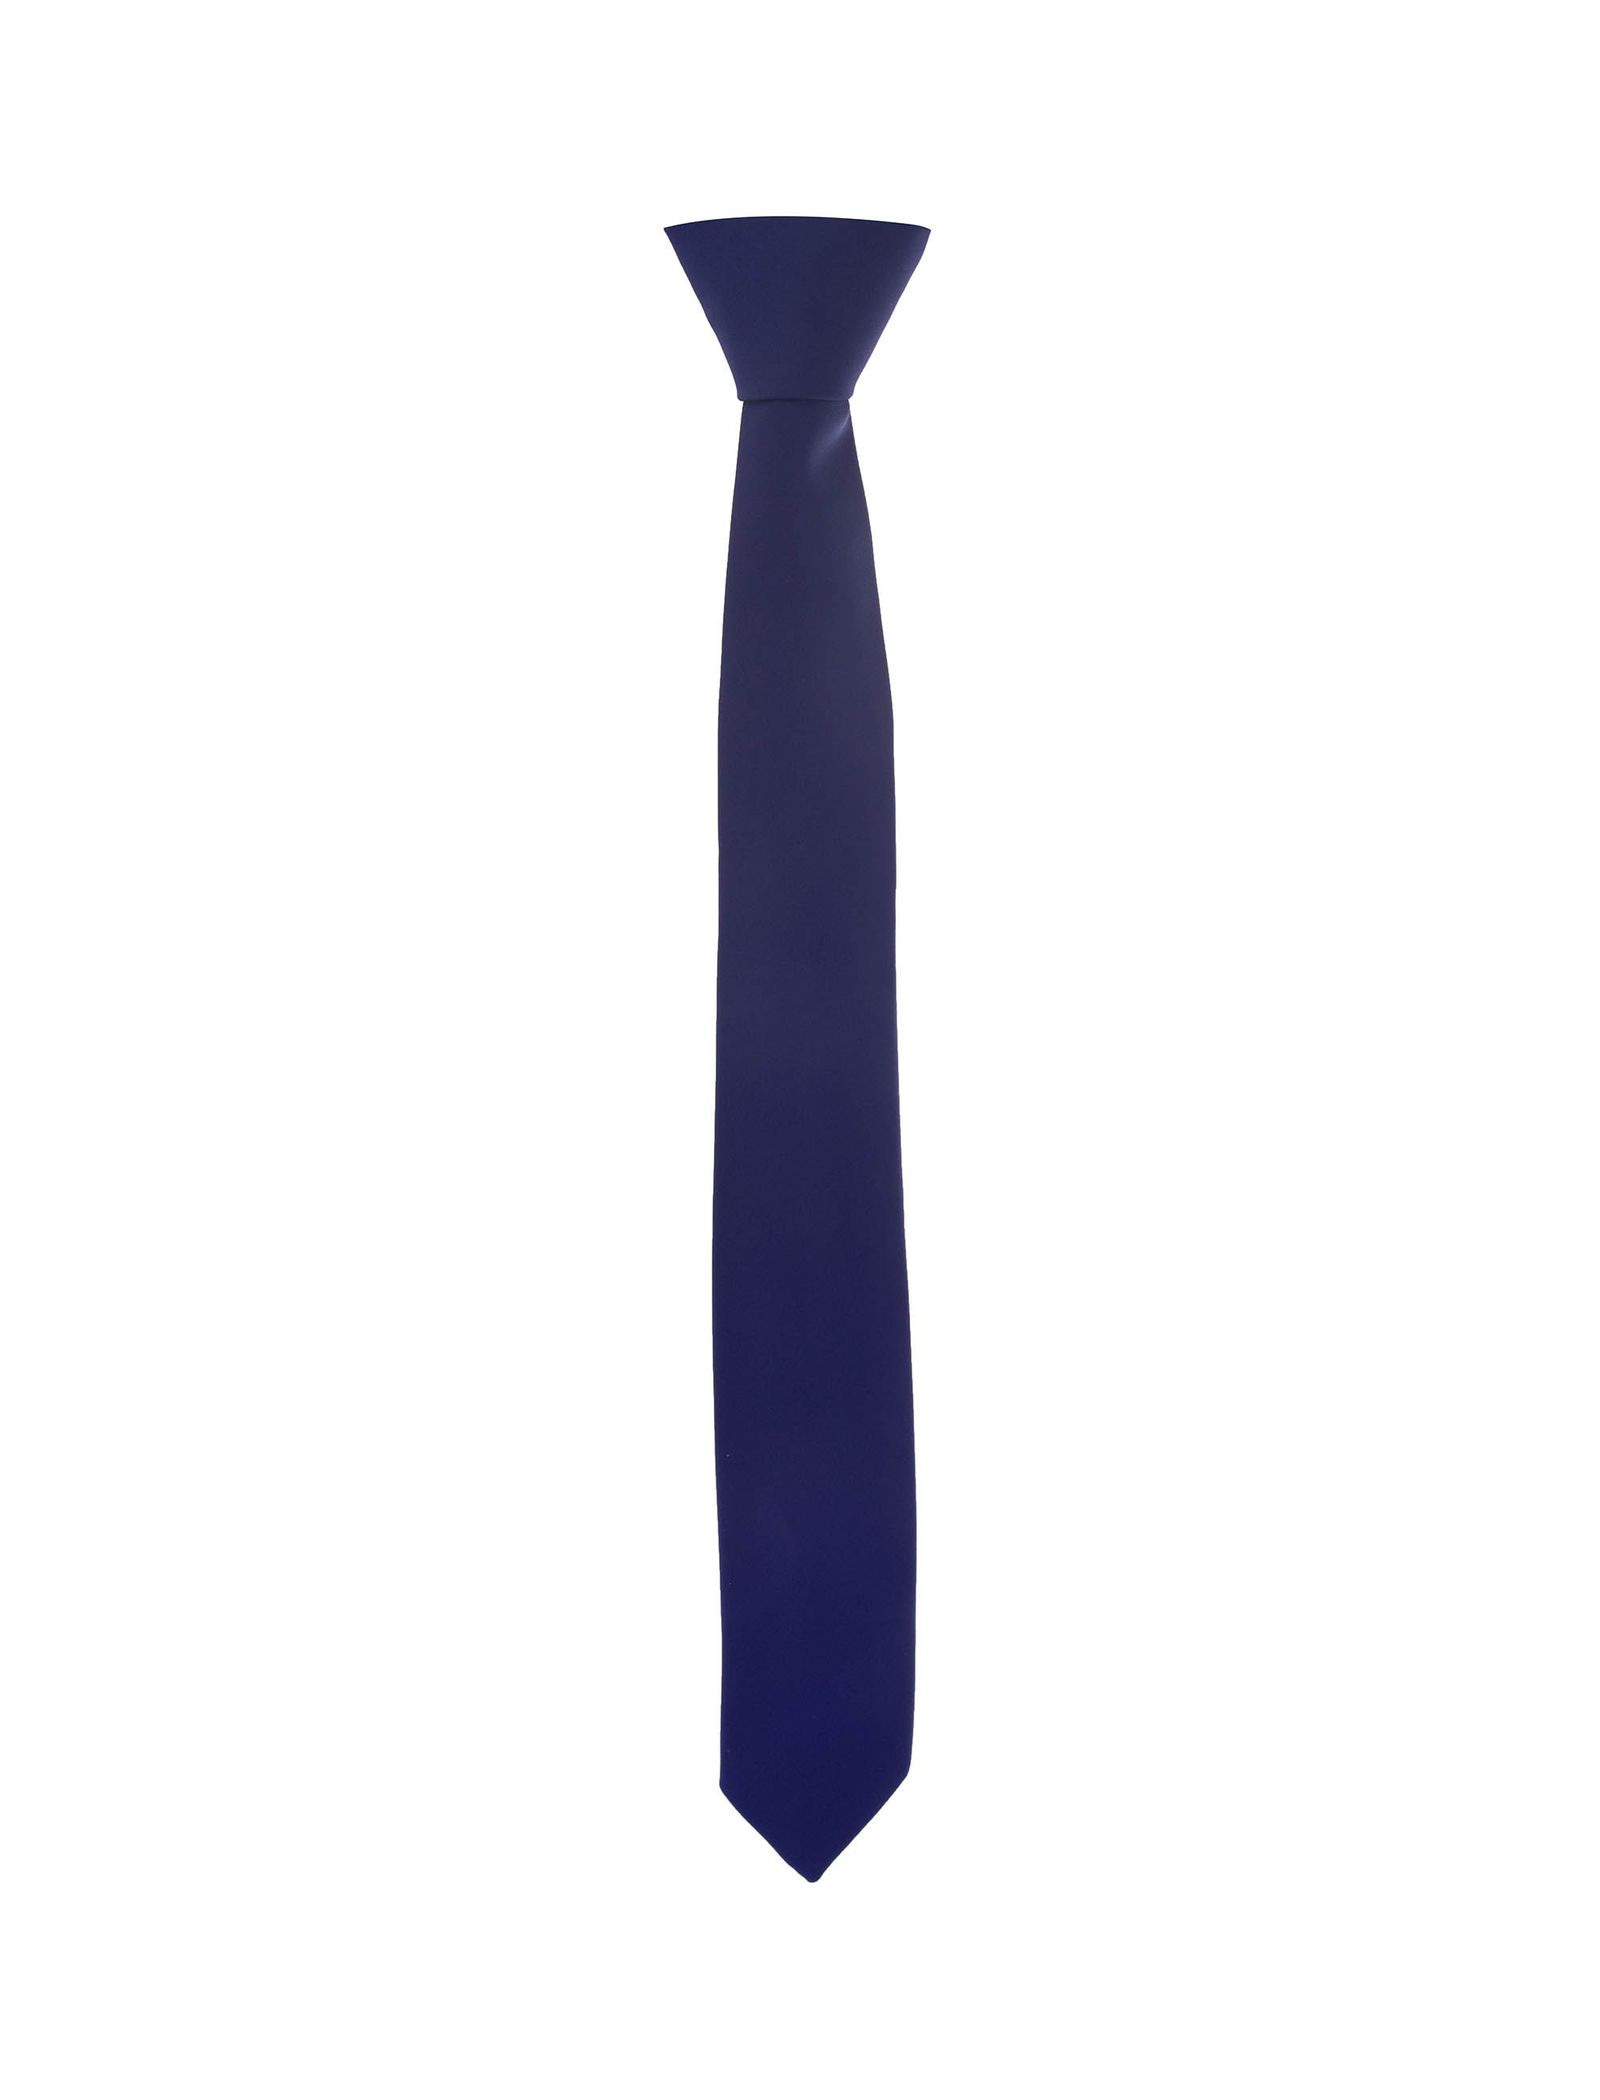 کراوات پاترون مدل 1723112 تک سایز - آبي - 2